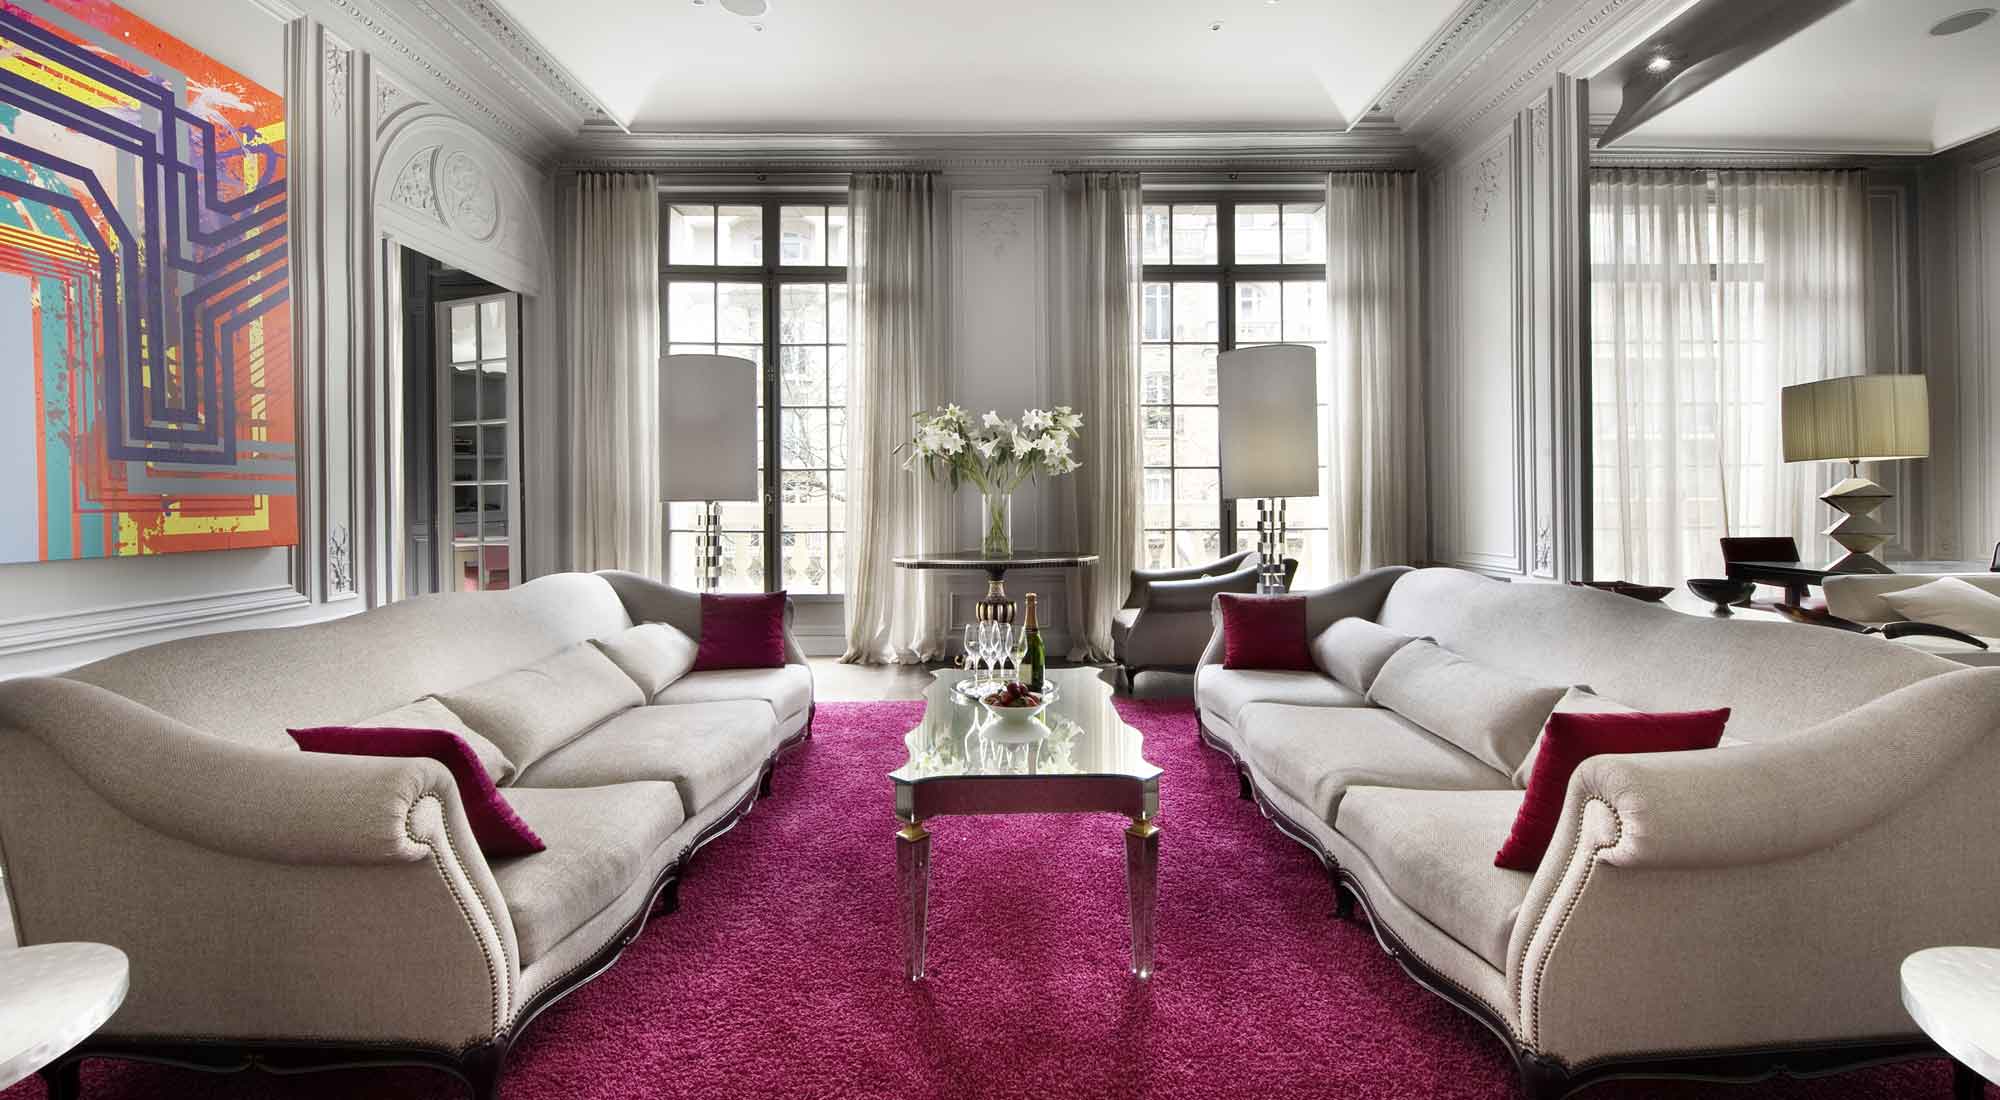 Paris luxury Apartment for Rent / 16th / Casol Villas France